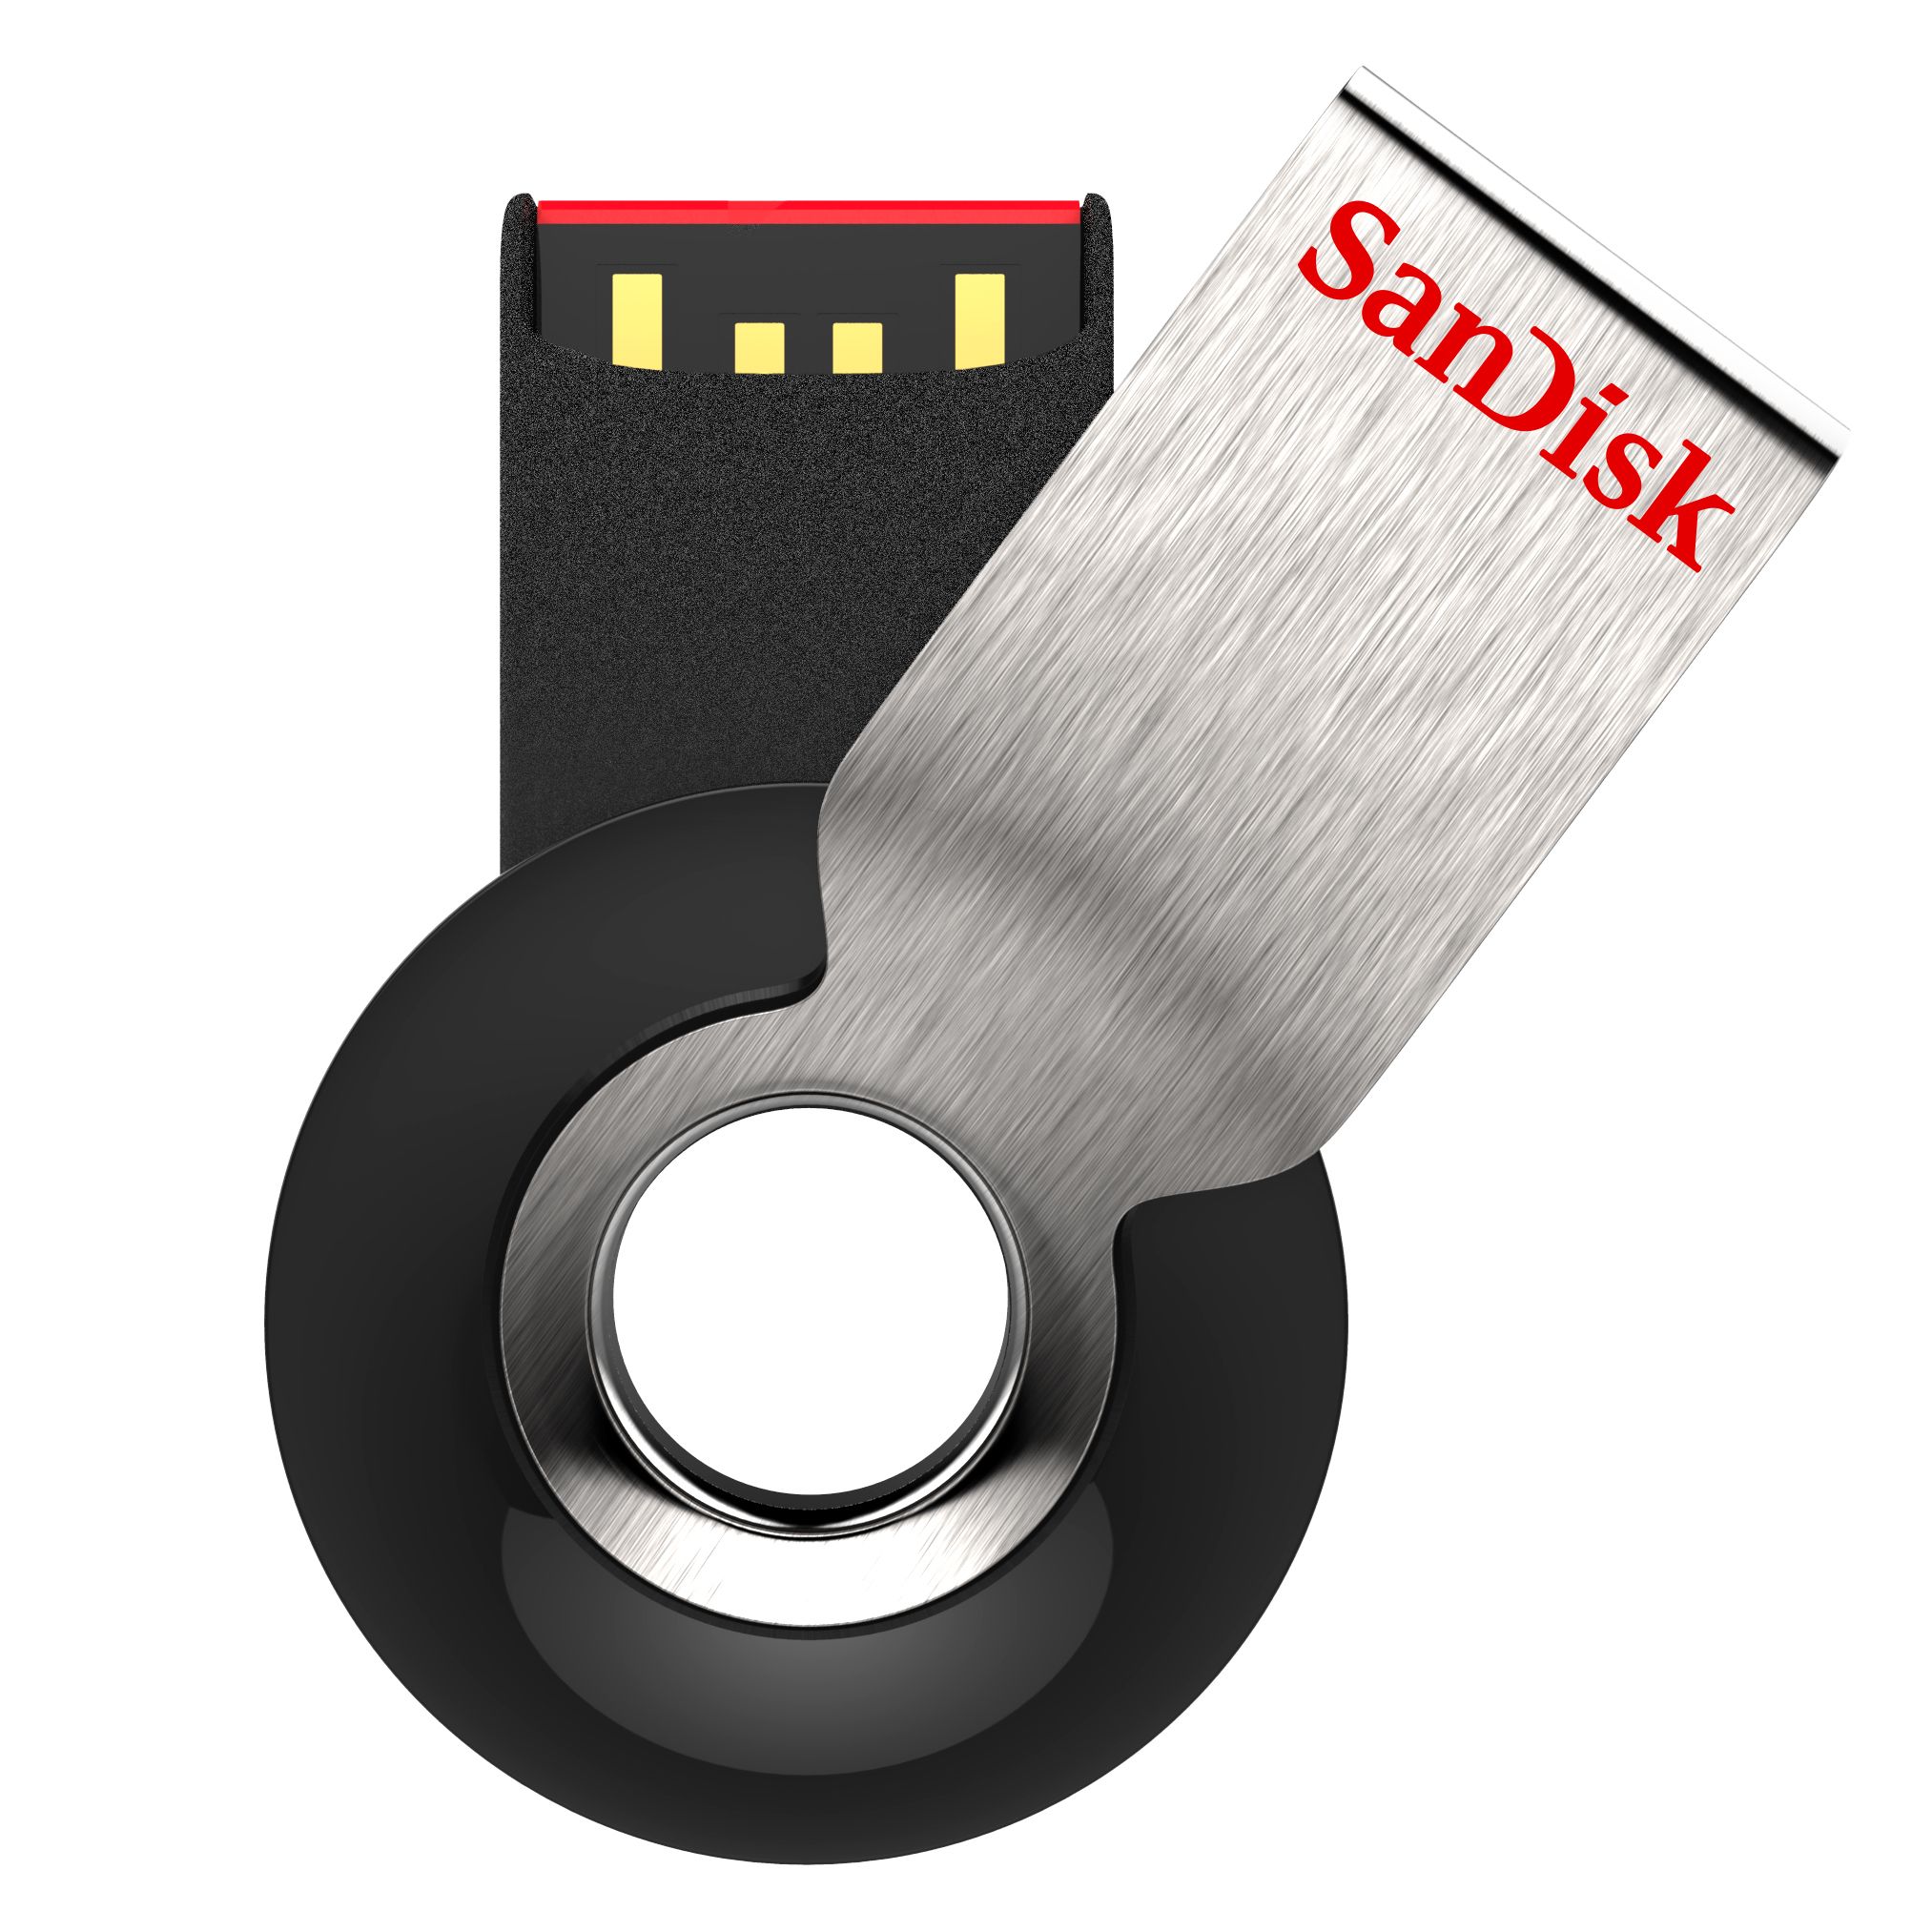 Cruzer Orbit USB Flash Drive - 8GB